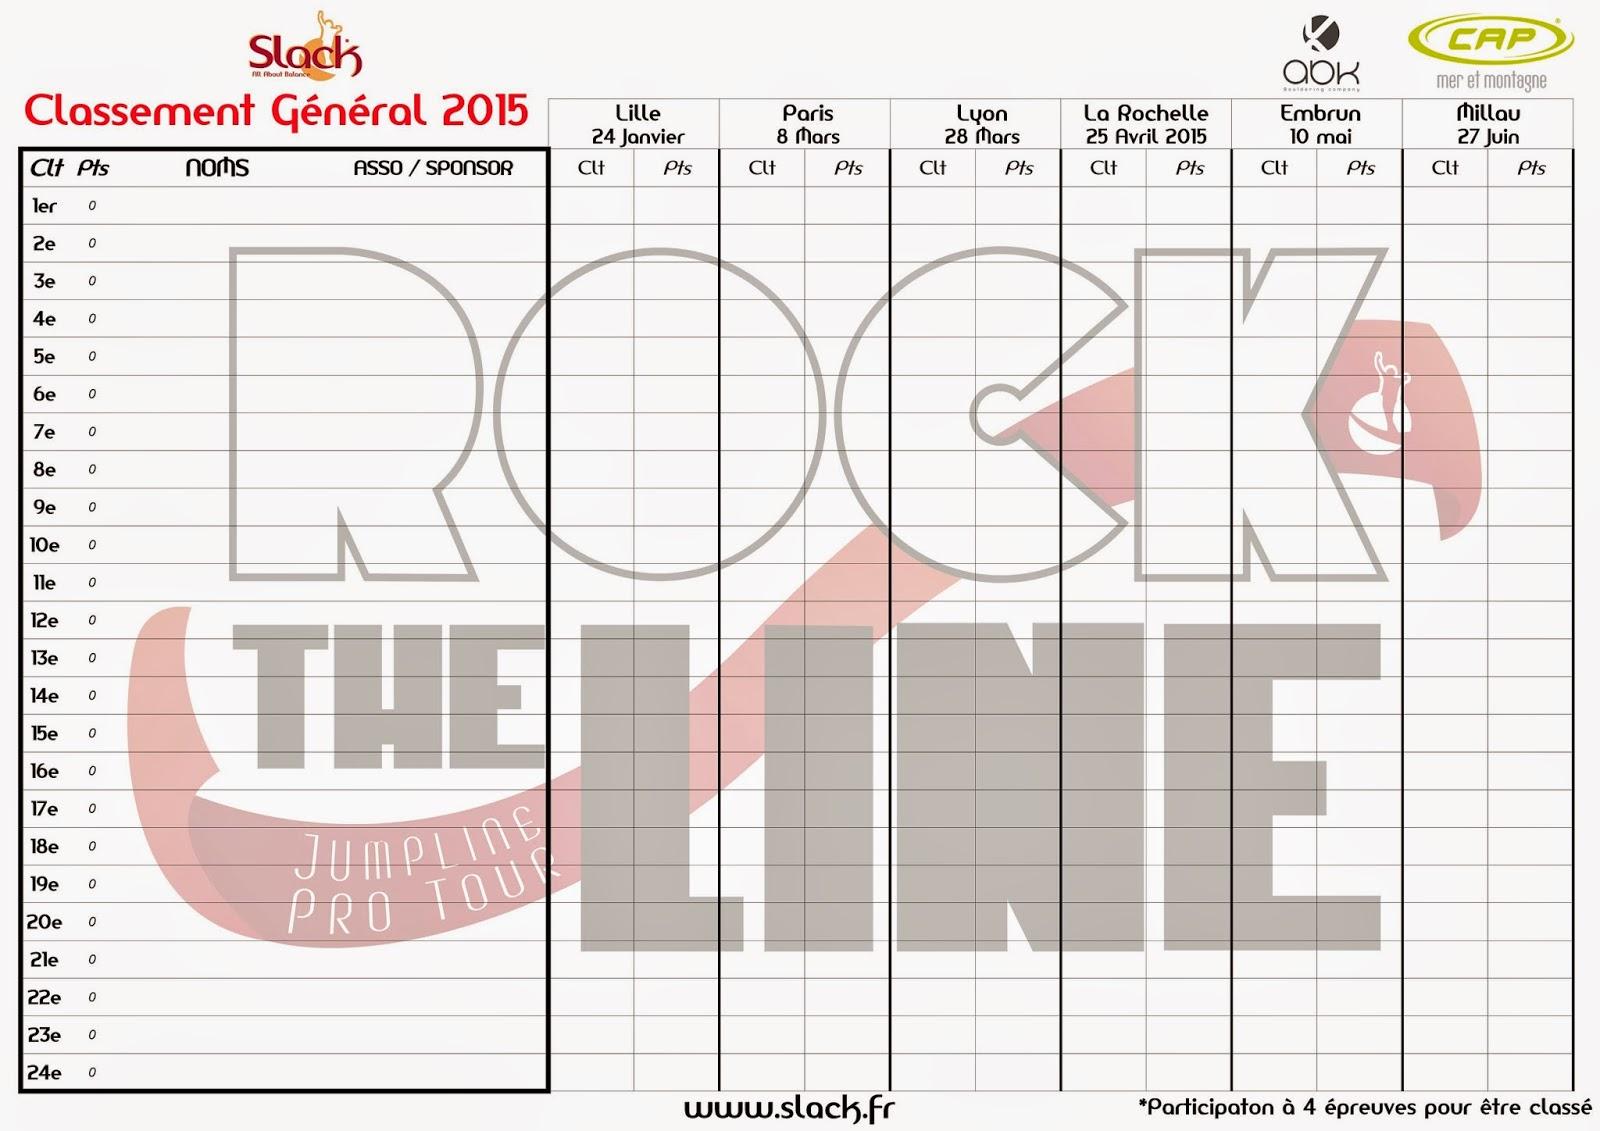 Rock The Line, Jumpline Pro Tour 2015